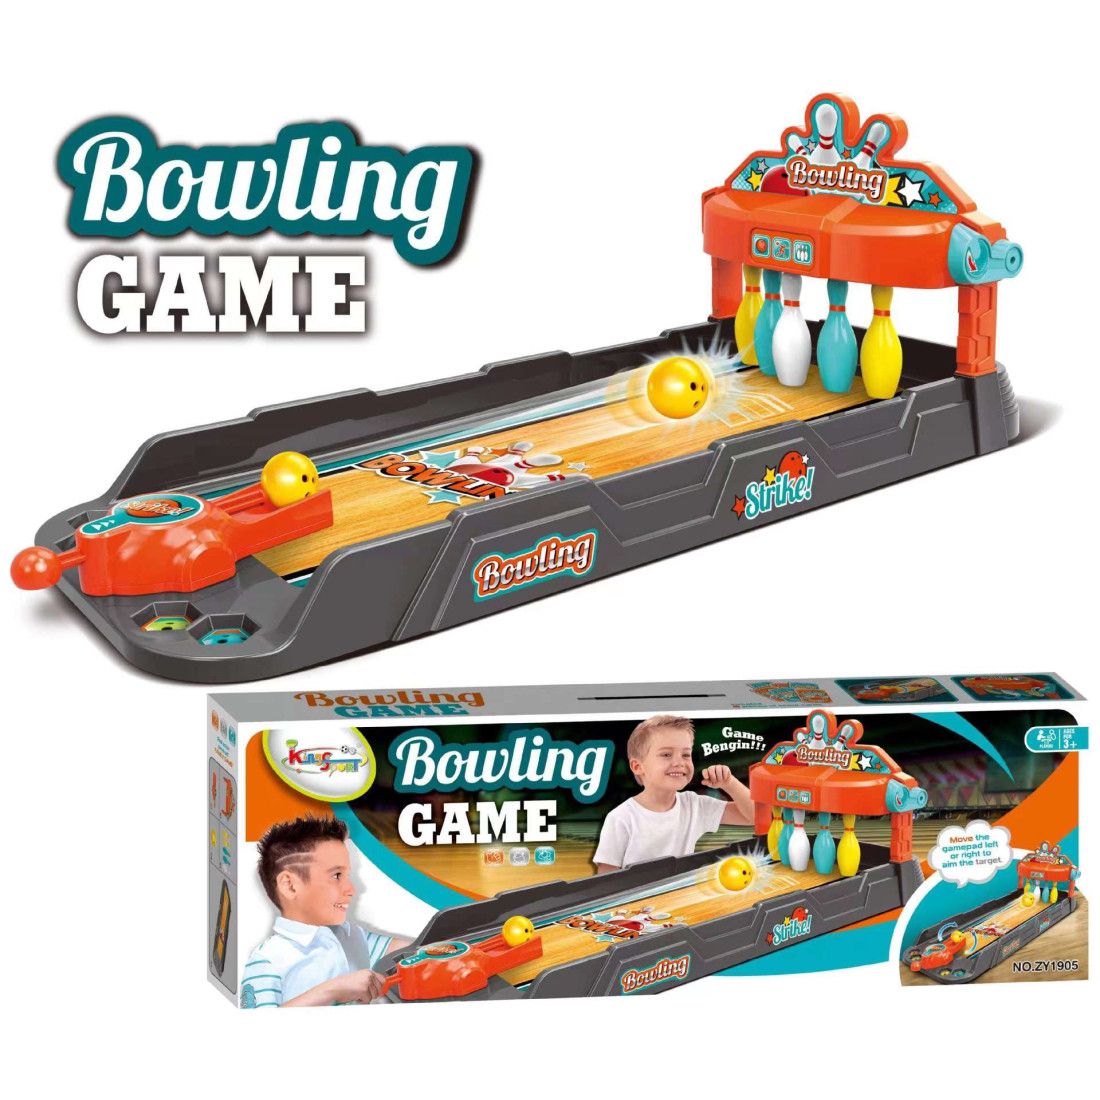 Bowling Game Playset